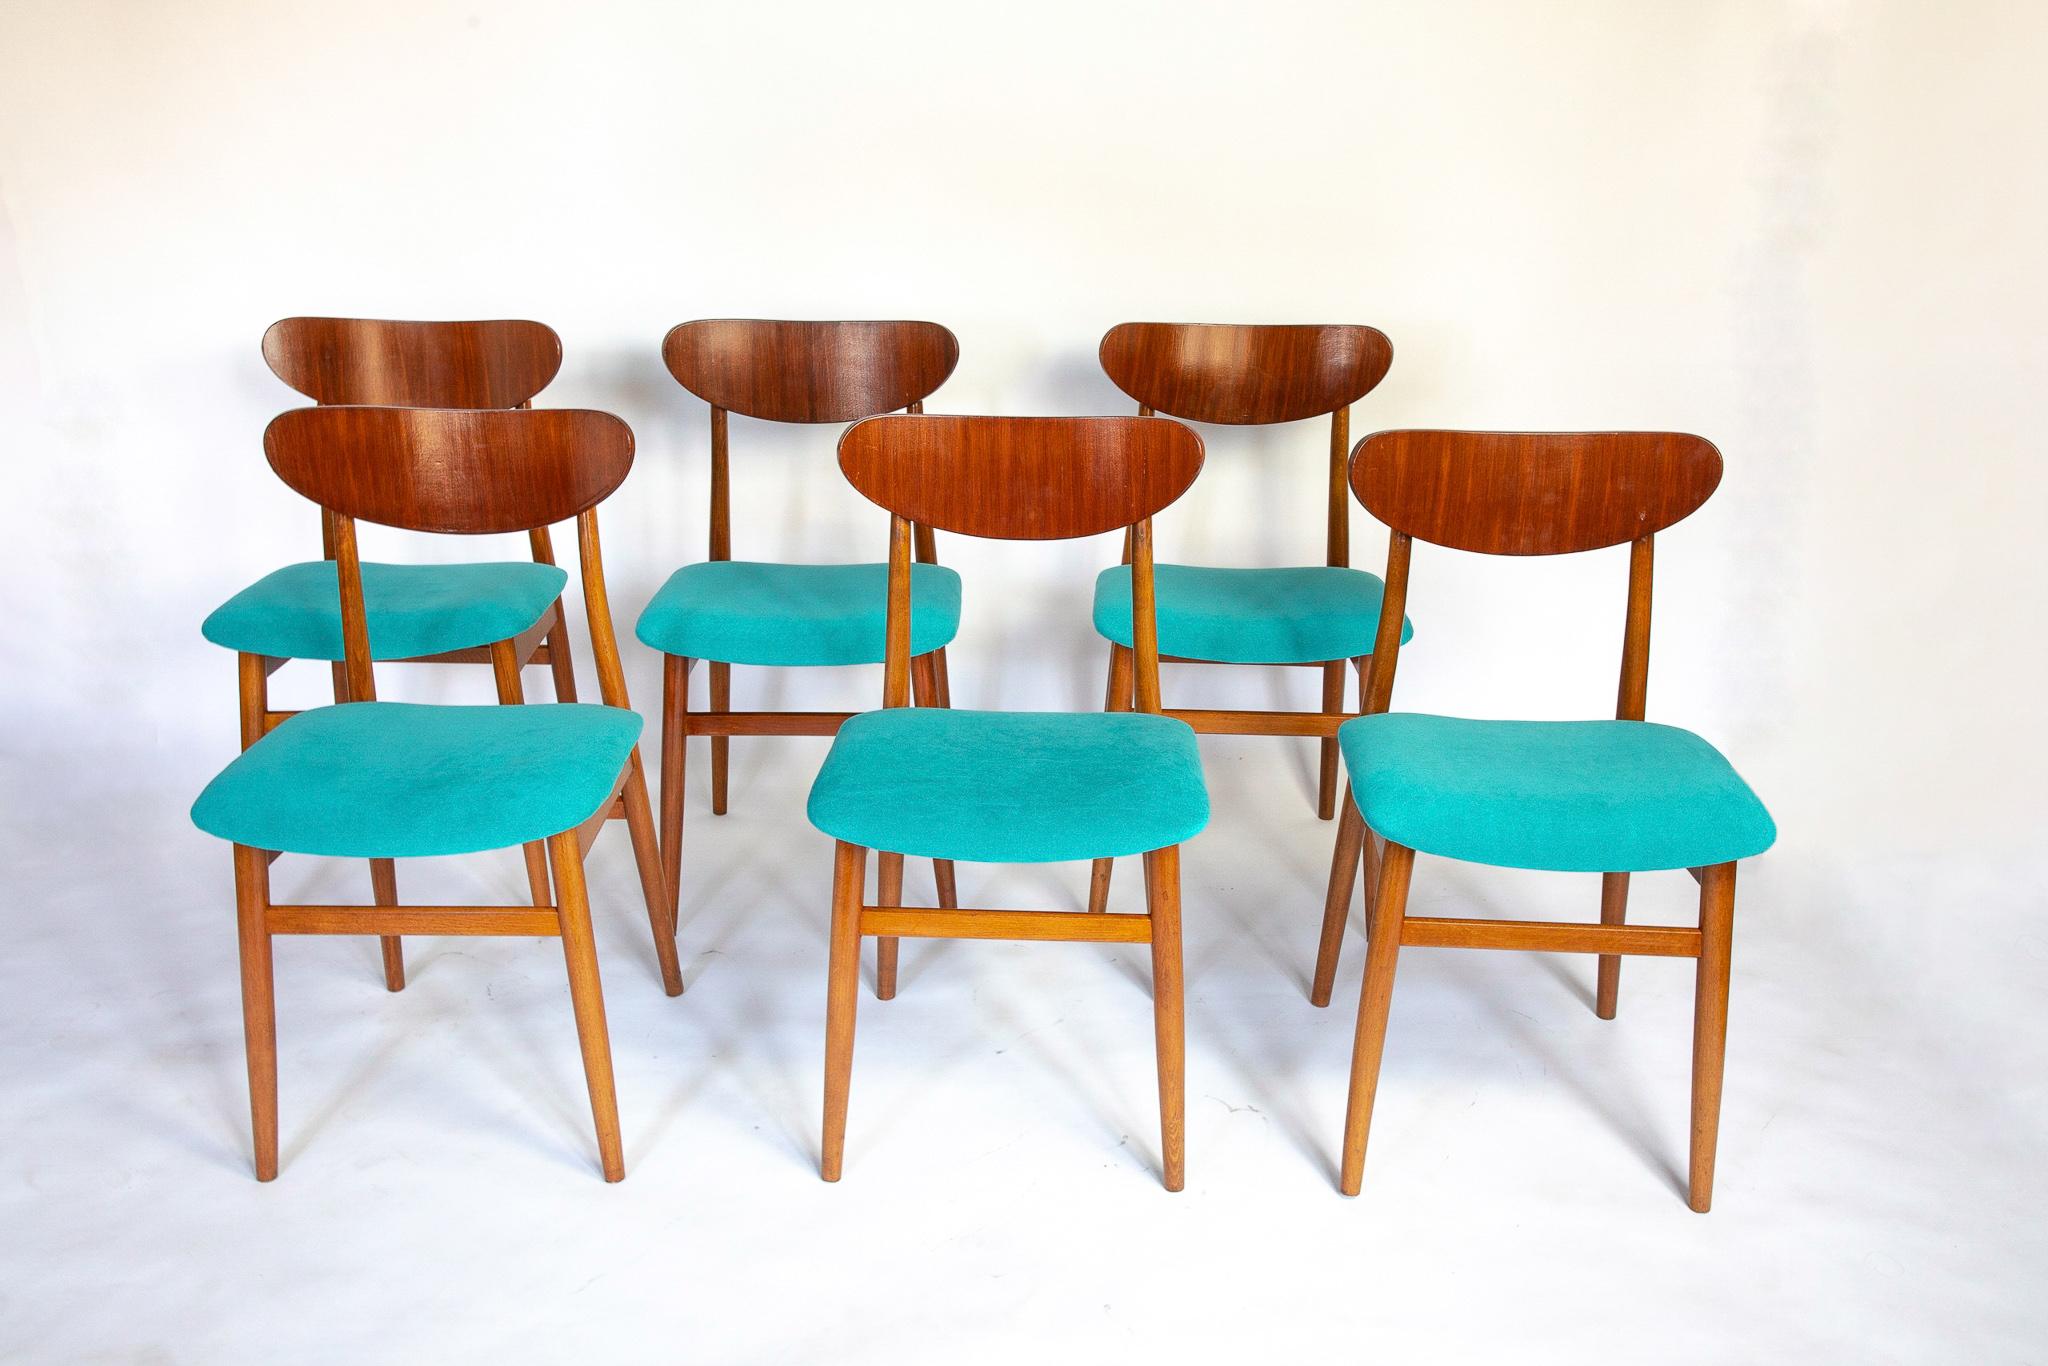 Chaises de salle à manger modernes du milieu du siècle avec revêtement en velours bleu, ensemble de 6, années 1950

Cet ensemble de six chaises de salle à manger en bois de style moderne du milieu du siècle ajoute une élégance subtile à chaque salle